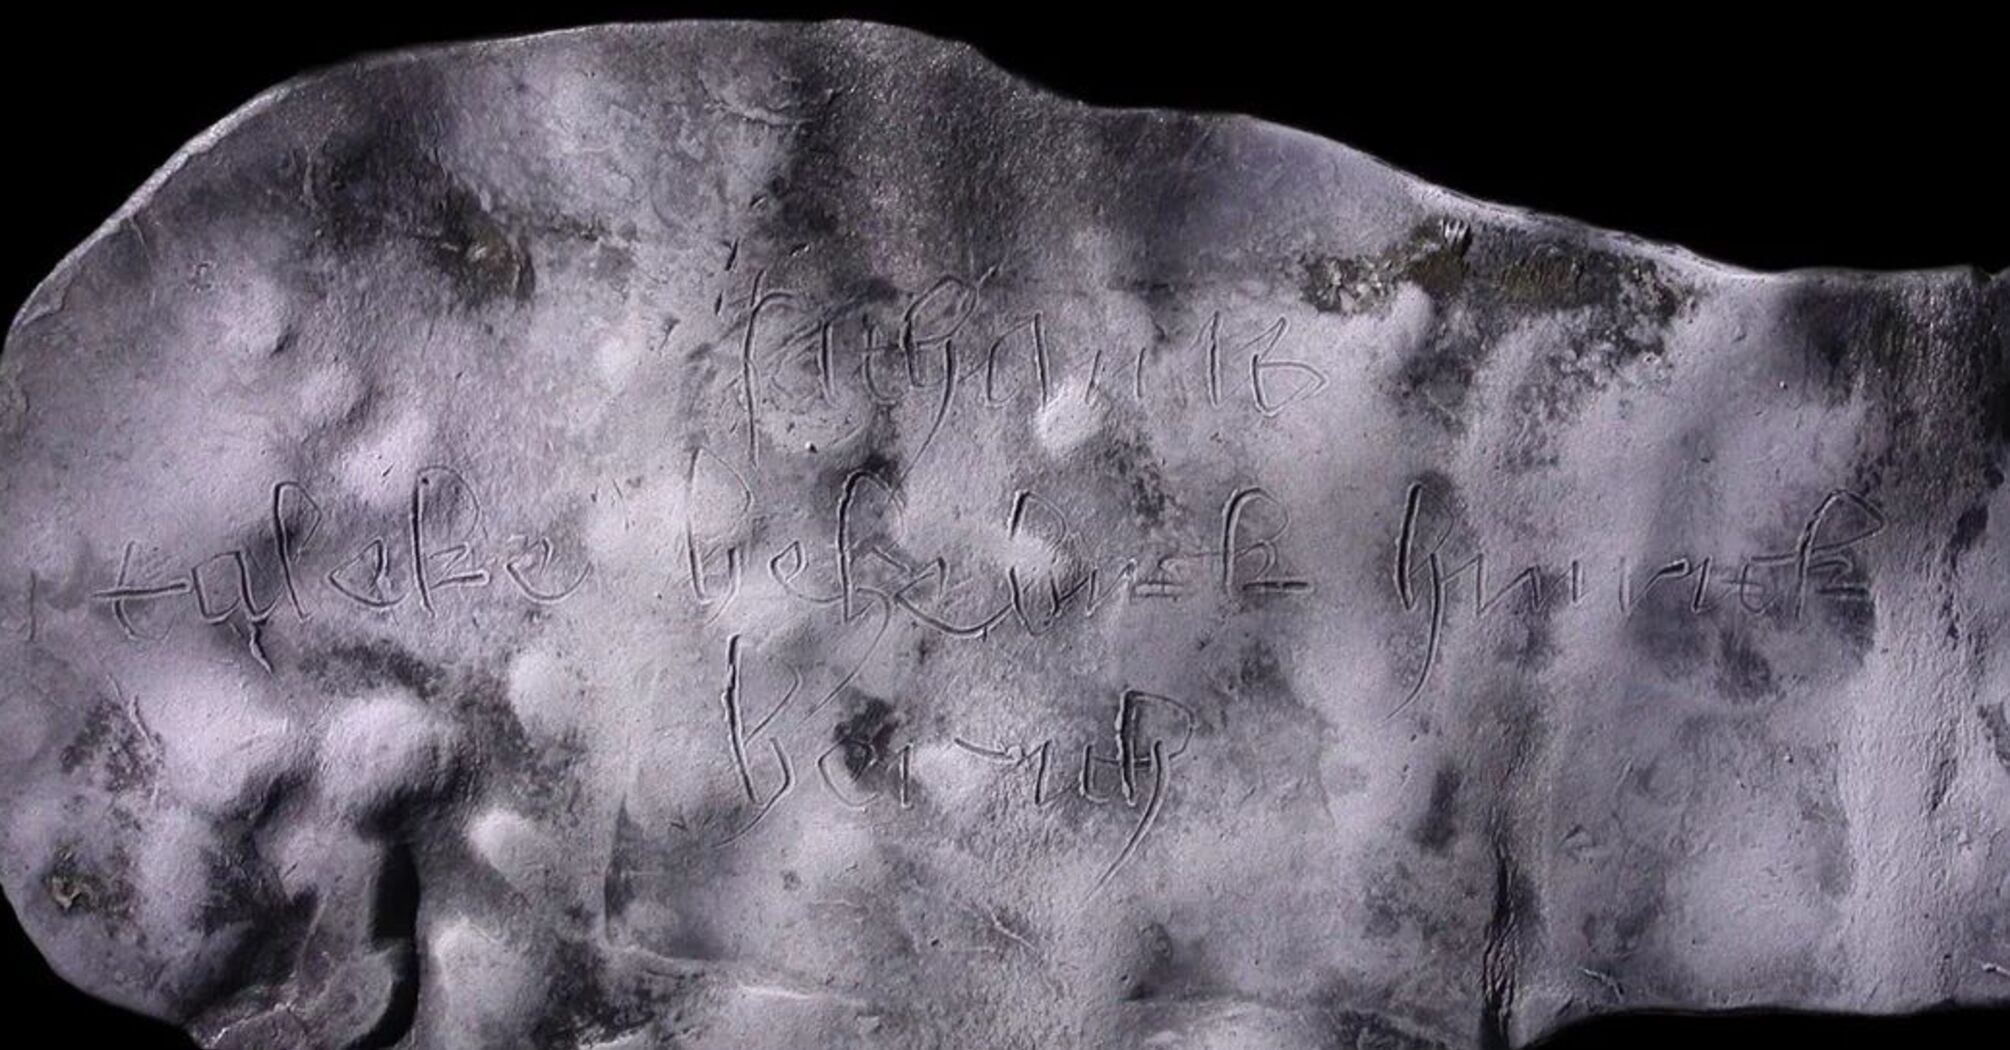 Średniowieczna tabliczka z 'diabelską klątwą' znaleziona w Niemczech (foto)